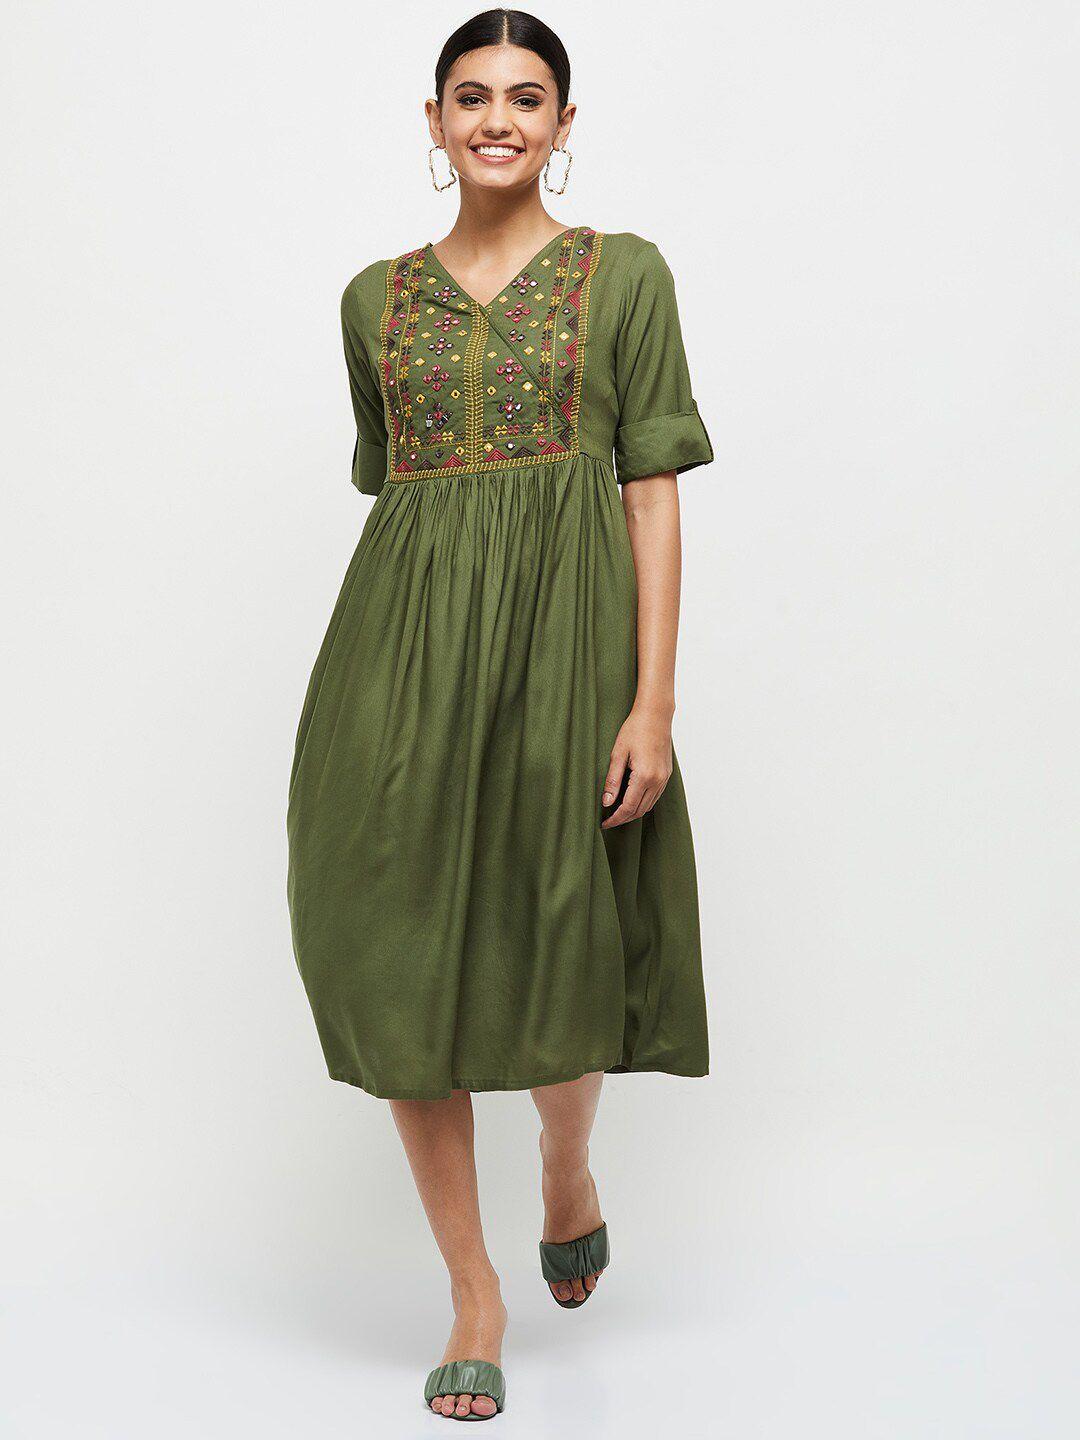 max-olive-green-a-line-midi-dress